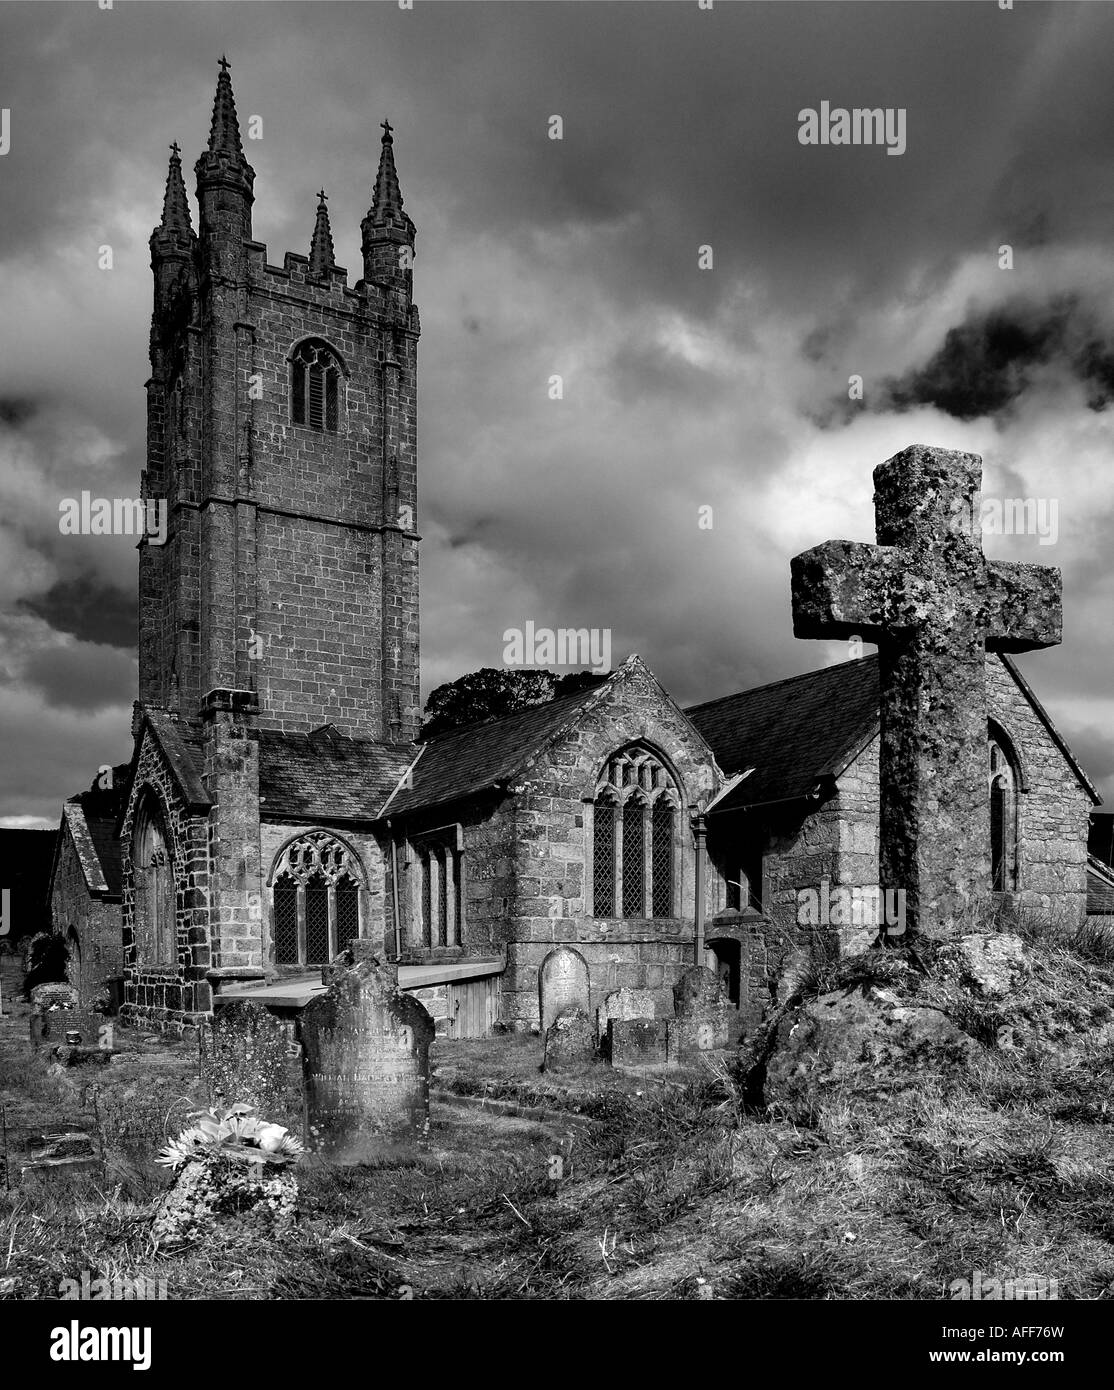 Belle atmosphère Monochrome Image de l'Eglise de St Pancras à Widecombe dans la lande Dartmoor dans le sud du Devon en Angleterre Banque D'Images